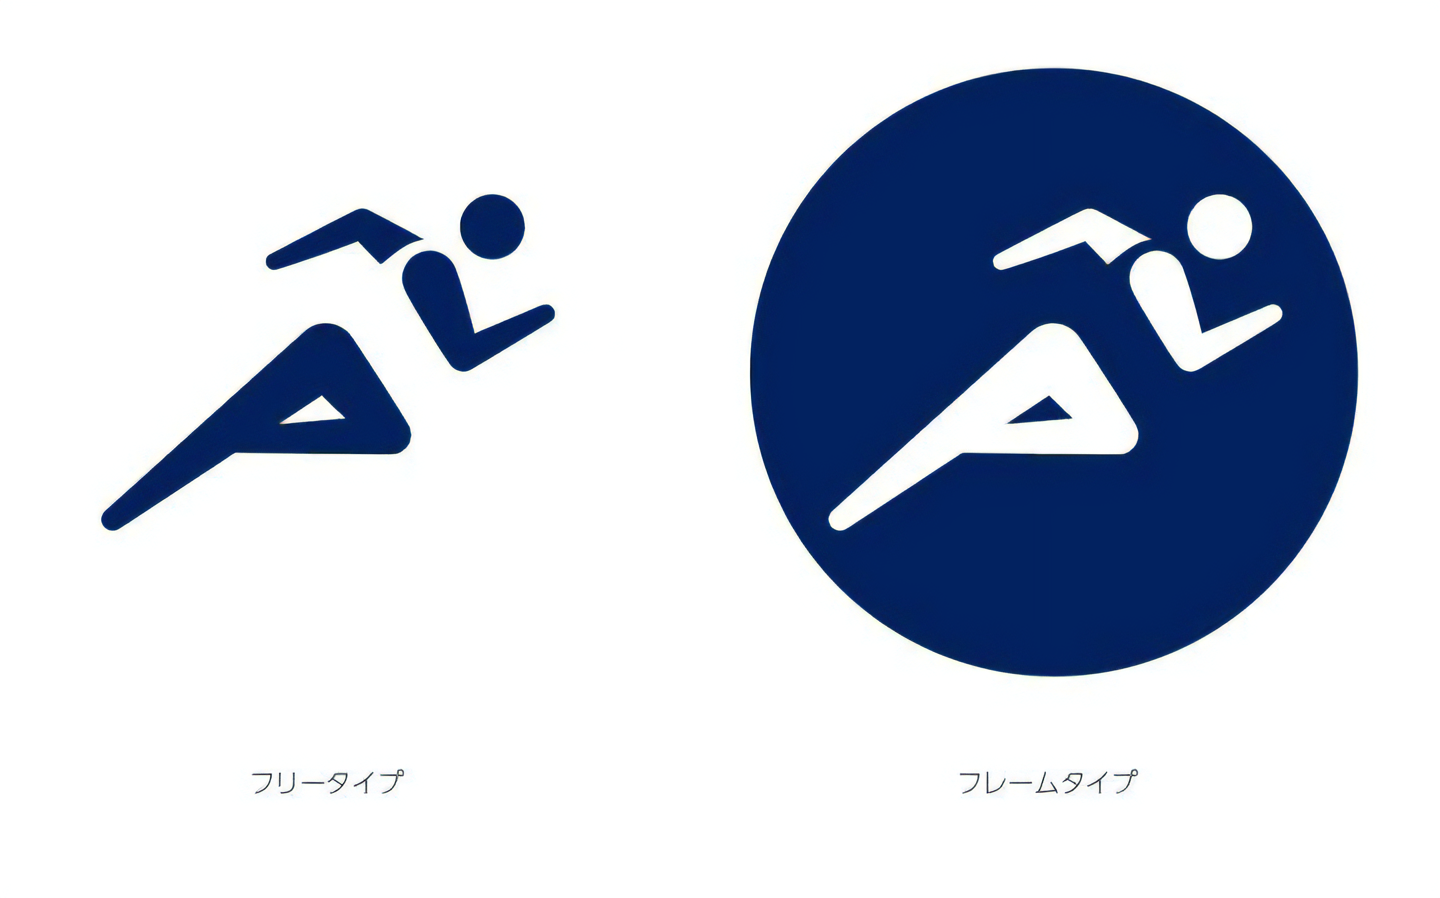 東京2020オリンピック / パラリンピックスポーツピクトグラム